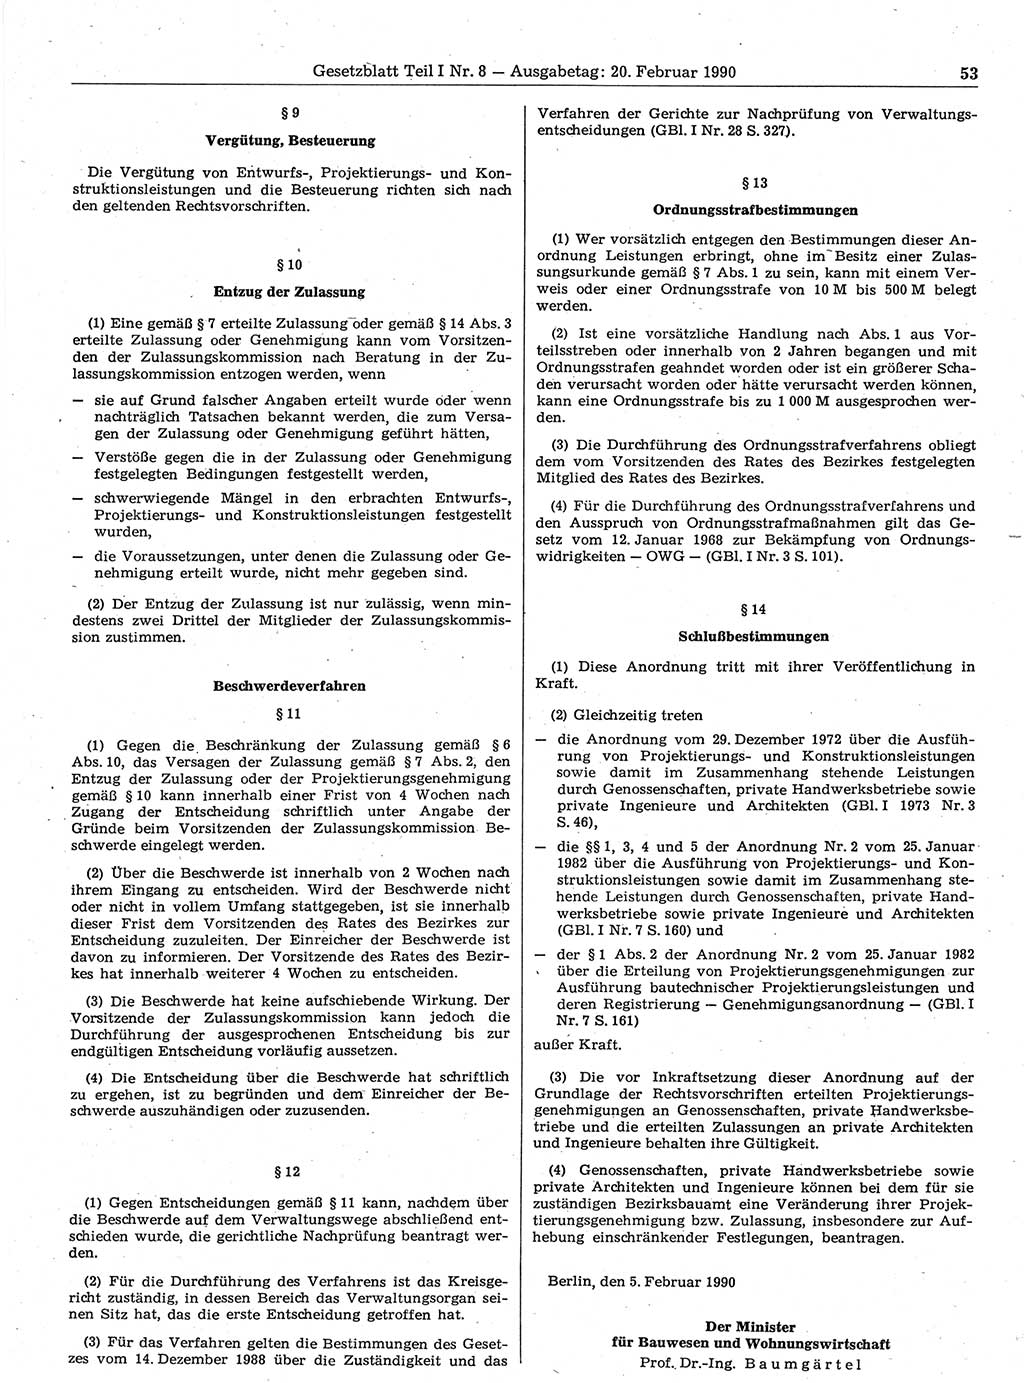 Gesetzblatt (GBl.) der Deutschen Demokratischen Republik (DDR) Teil Ⅰ 1990, Seite 53 (GBl. DDR Ⅰ 1990, S. 53)